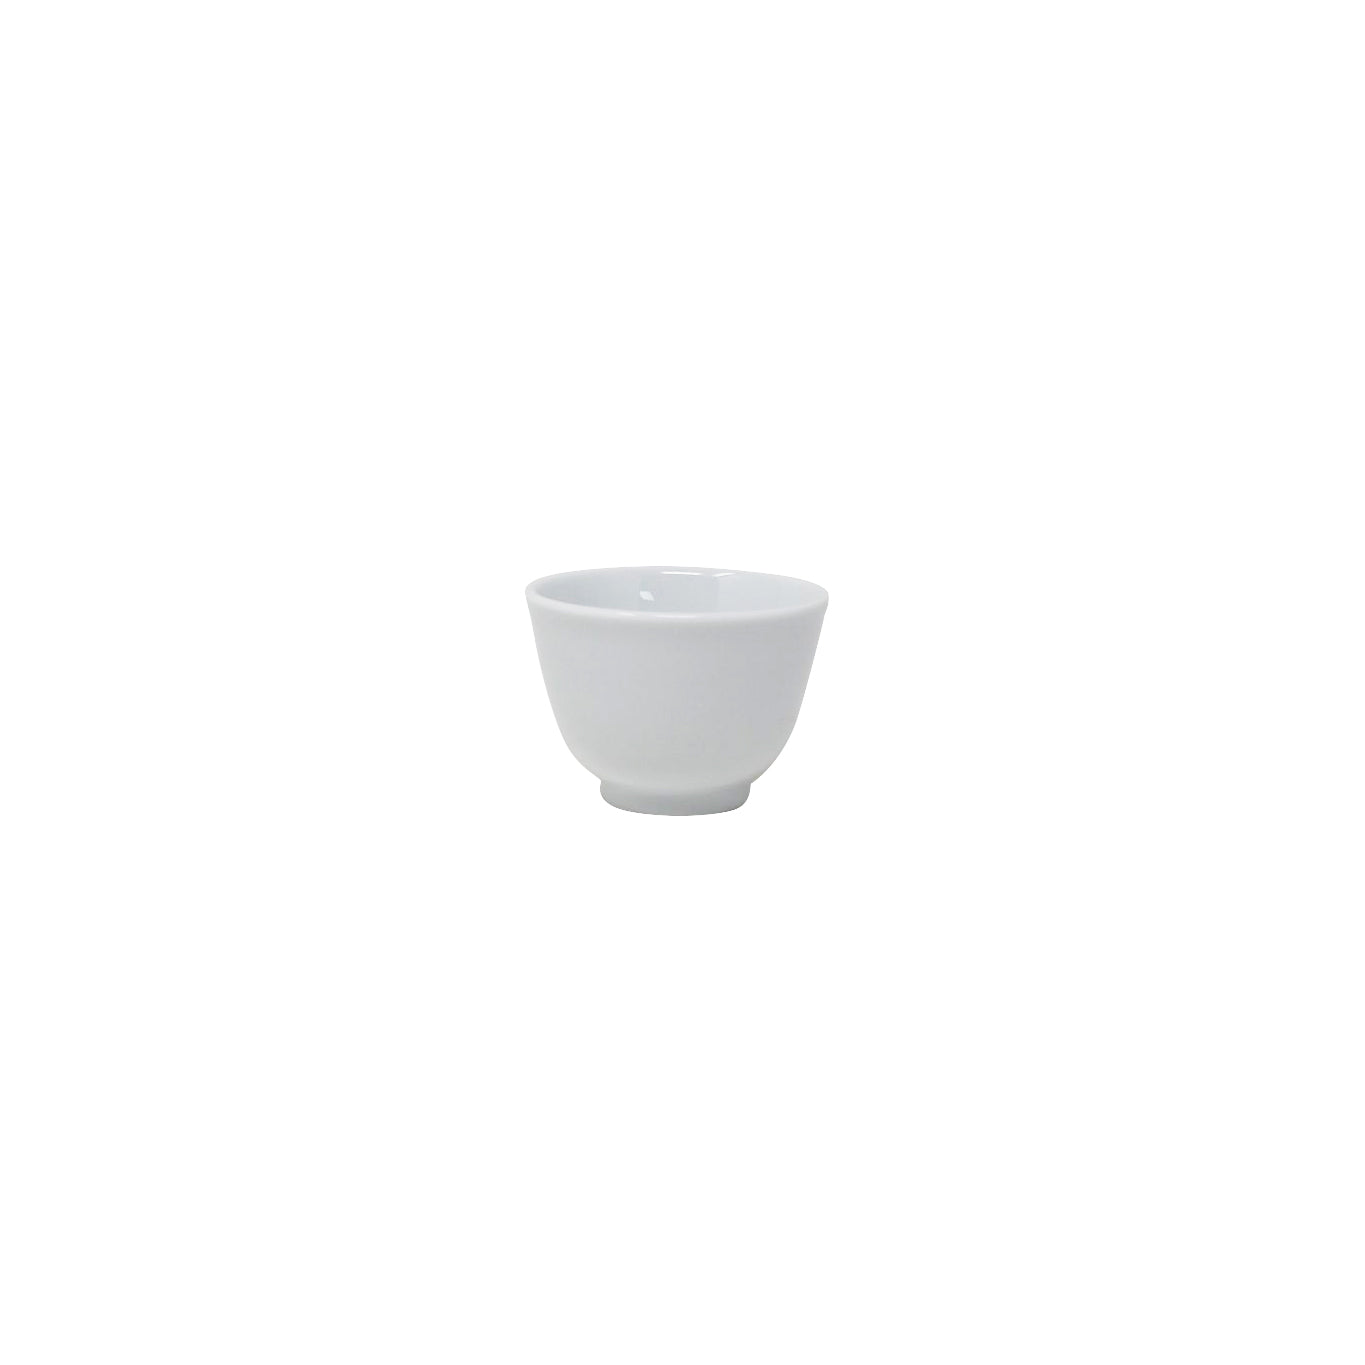 Noritake Lifestyle White Tea Cup 40ml